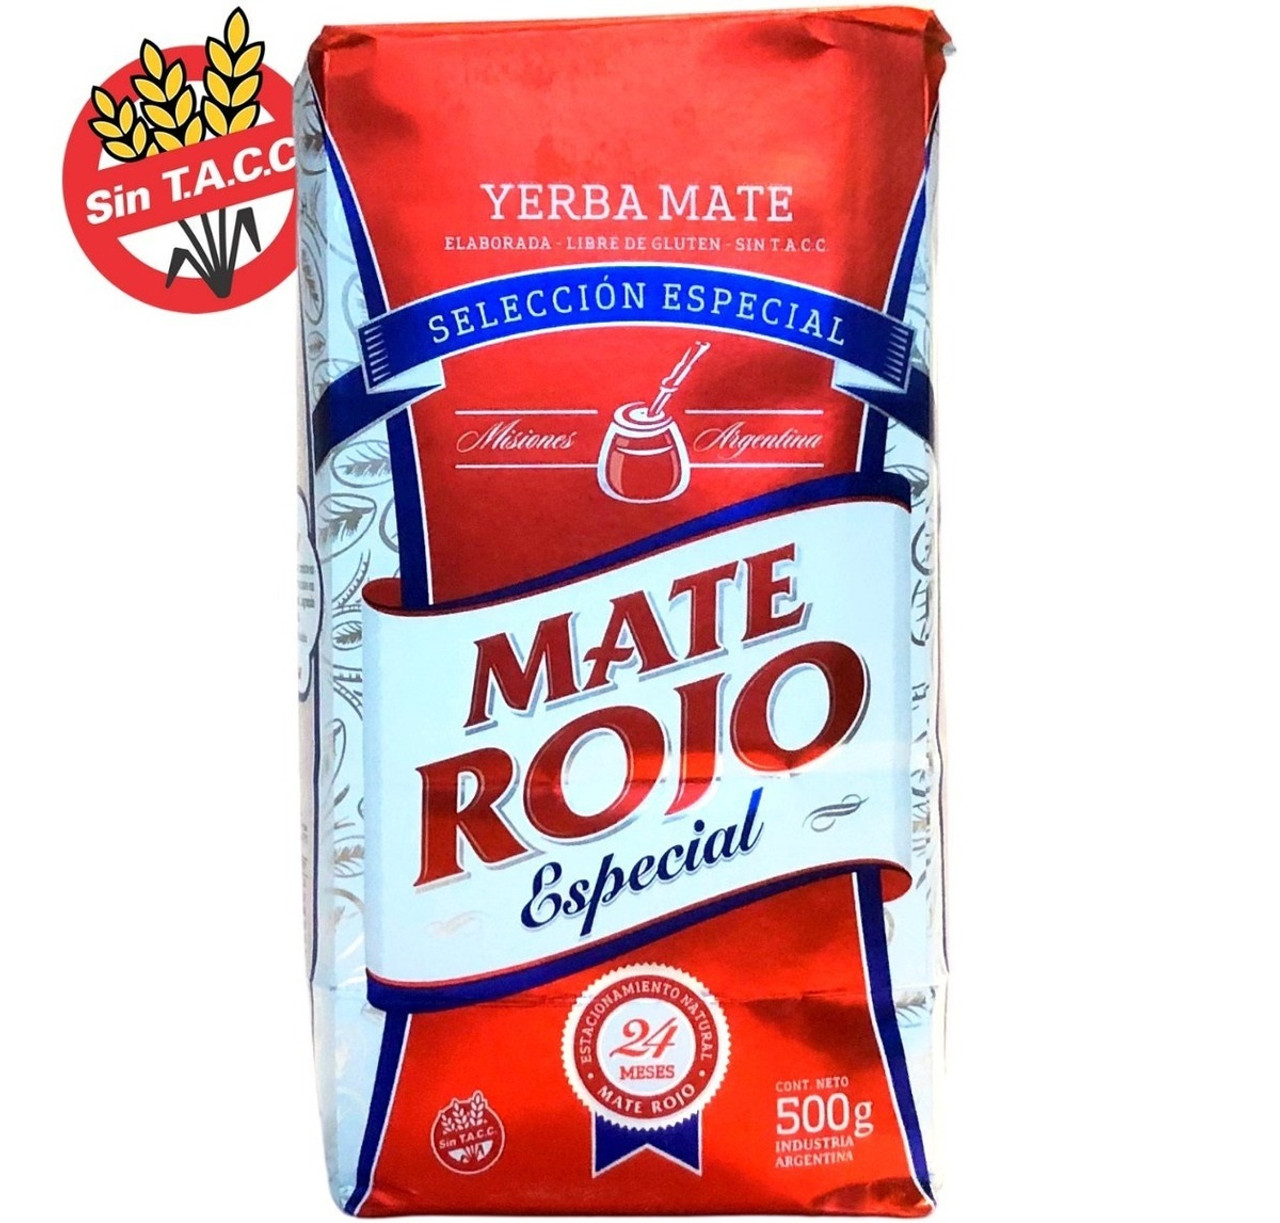 Mate Rojo Yerba Mate Special Selection Selección Especial from